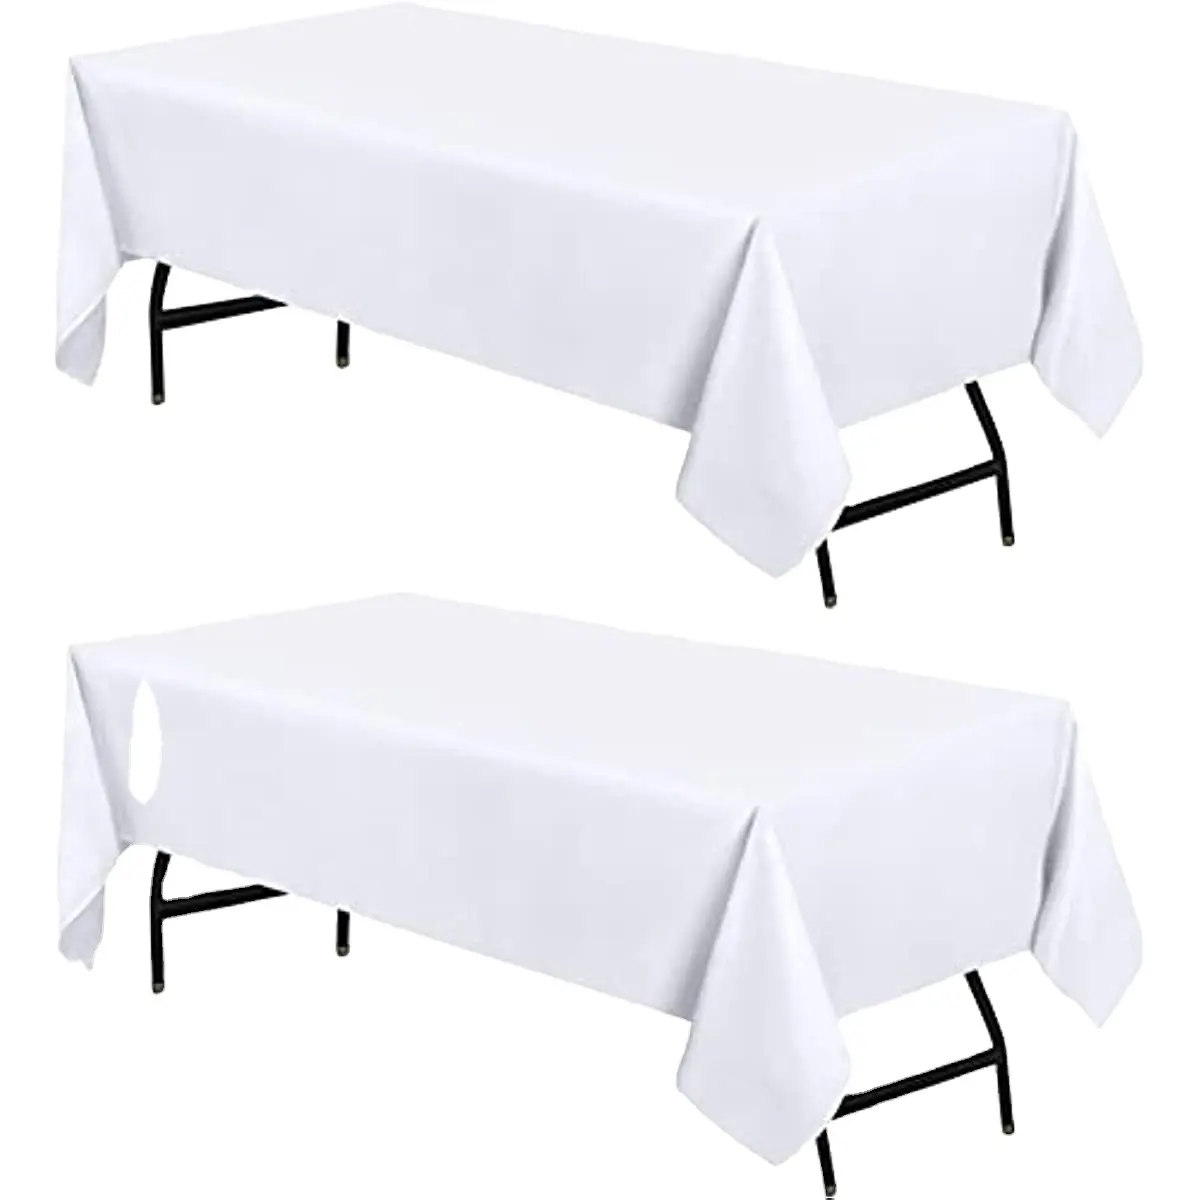 Premium-Tischdecken mit heißem Verkauf, rechteckig, 60 x 84 cm, Polyester-Tischdecke für Hochzeitsfeiern, Bankette